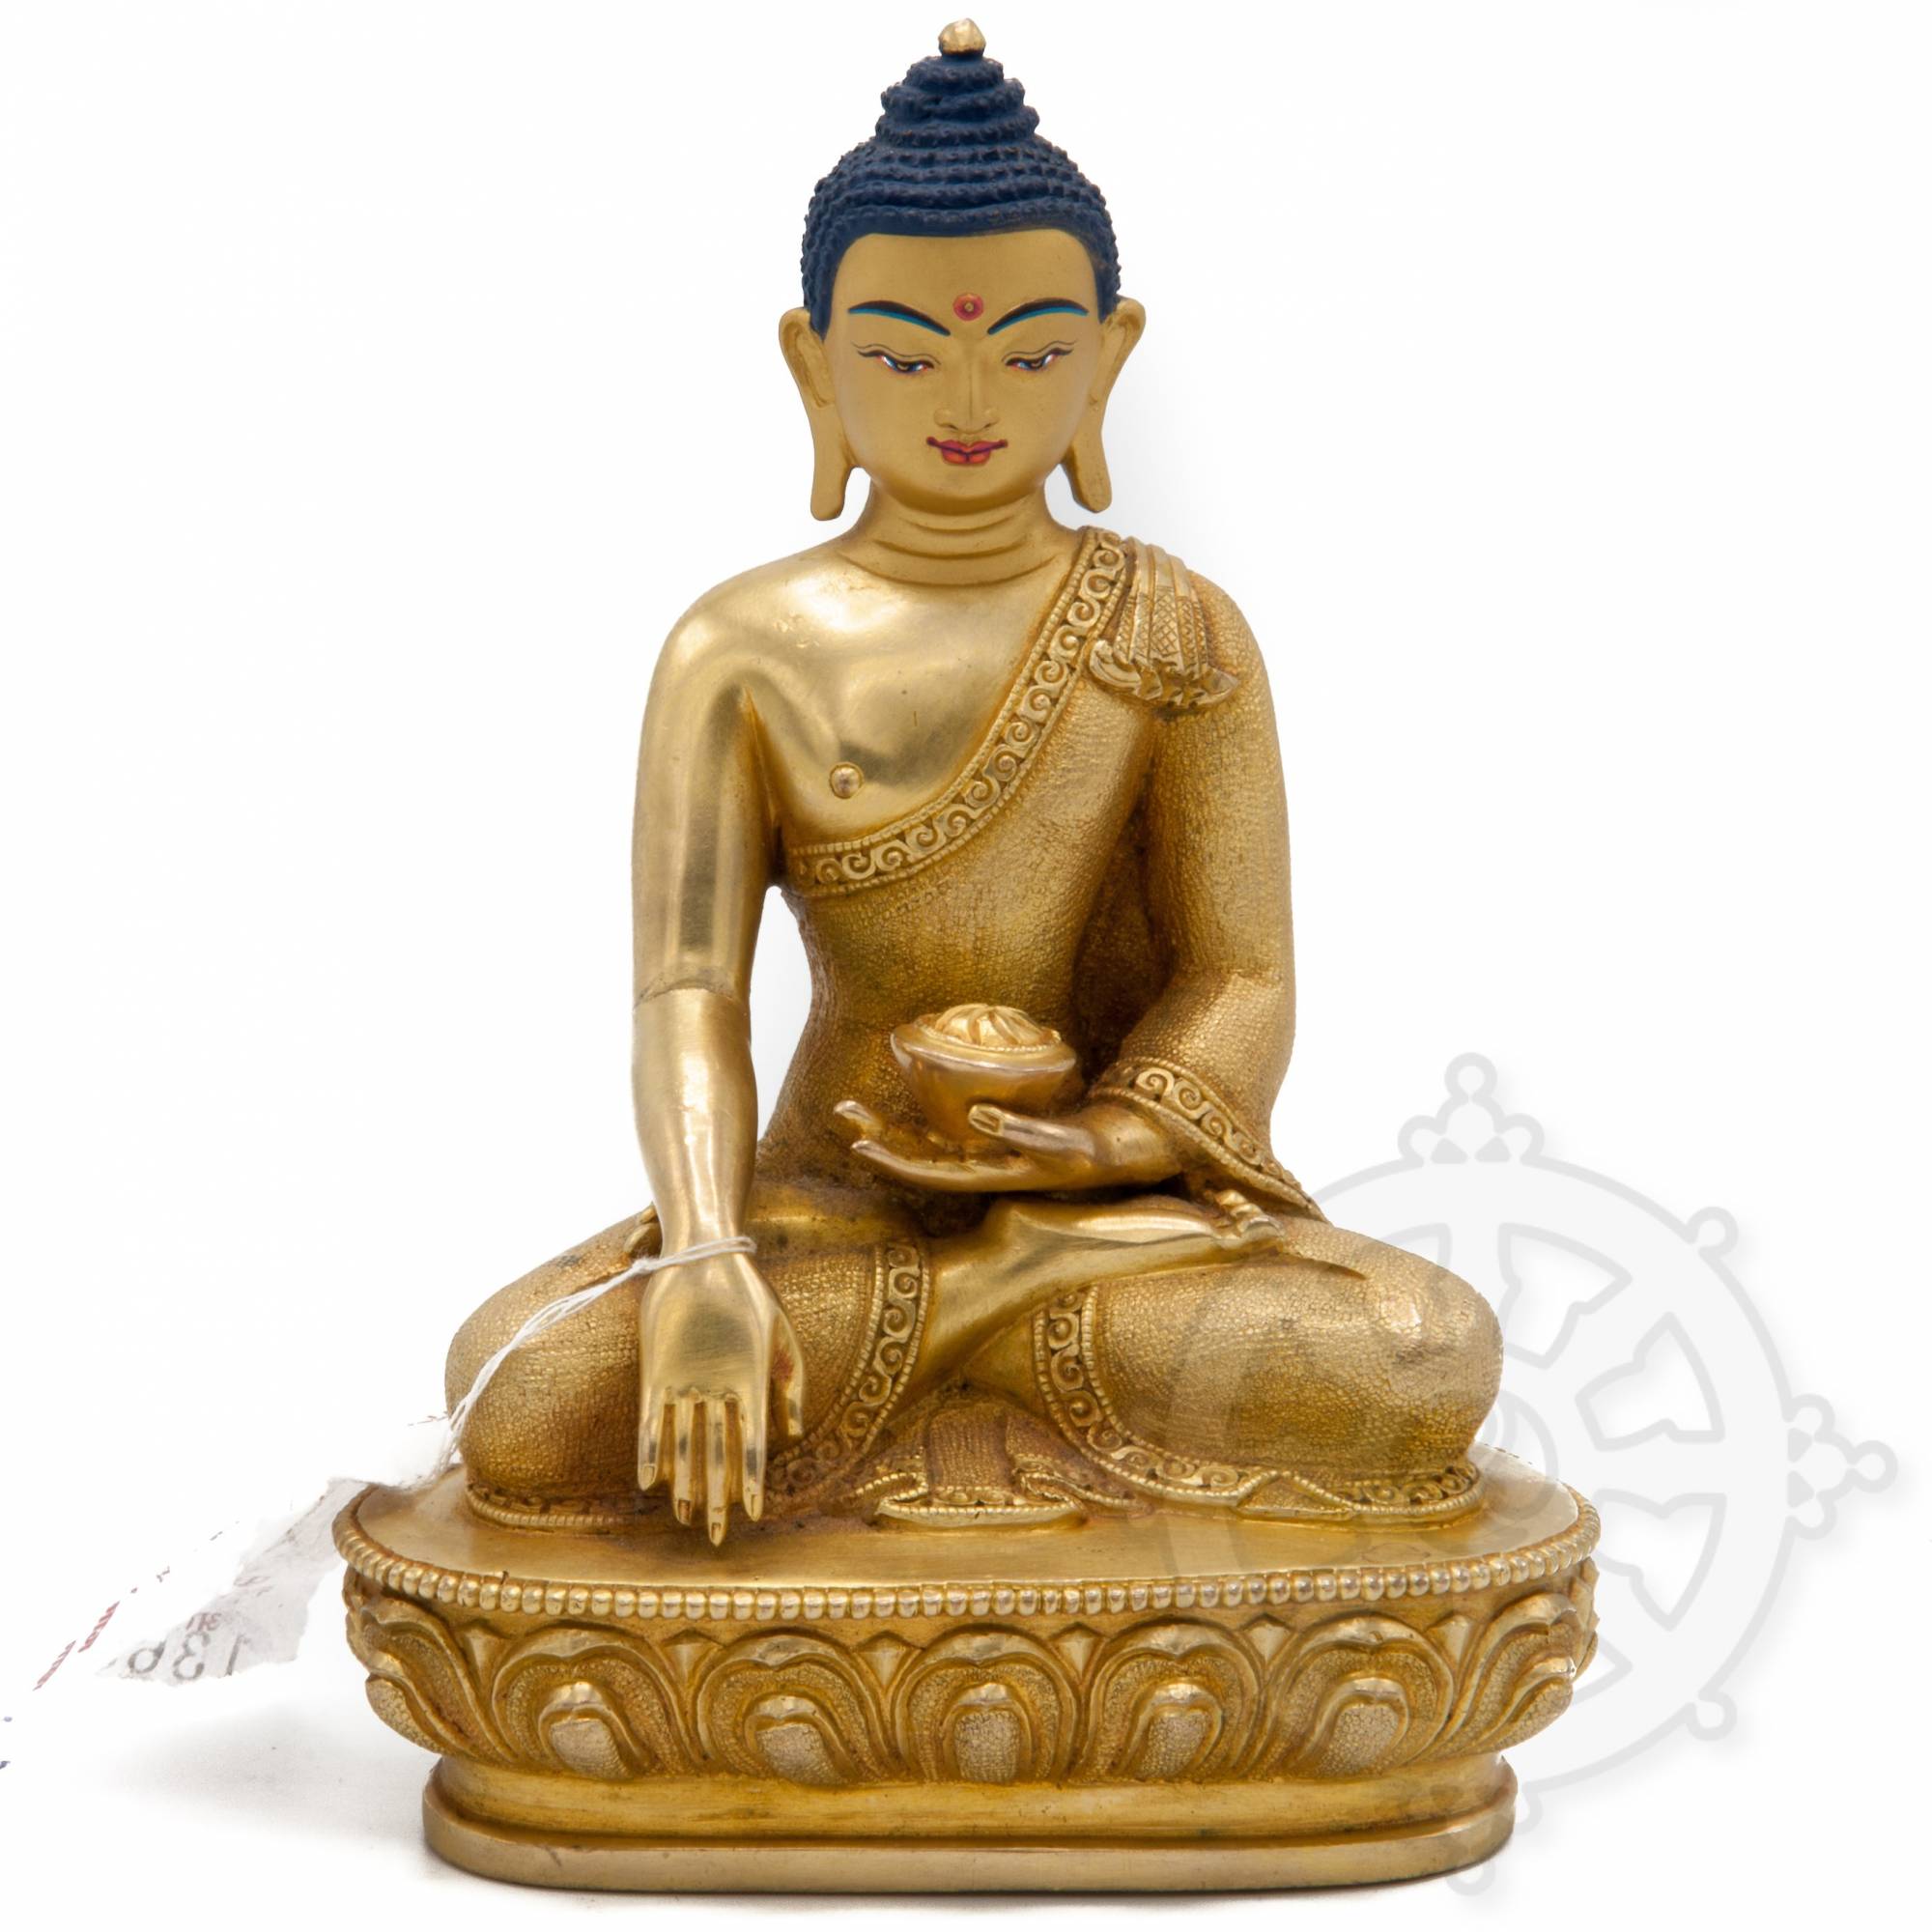 Volledig verguld boeddhistisch beeld van Boeddha Shakyamuni